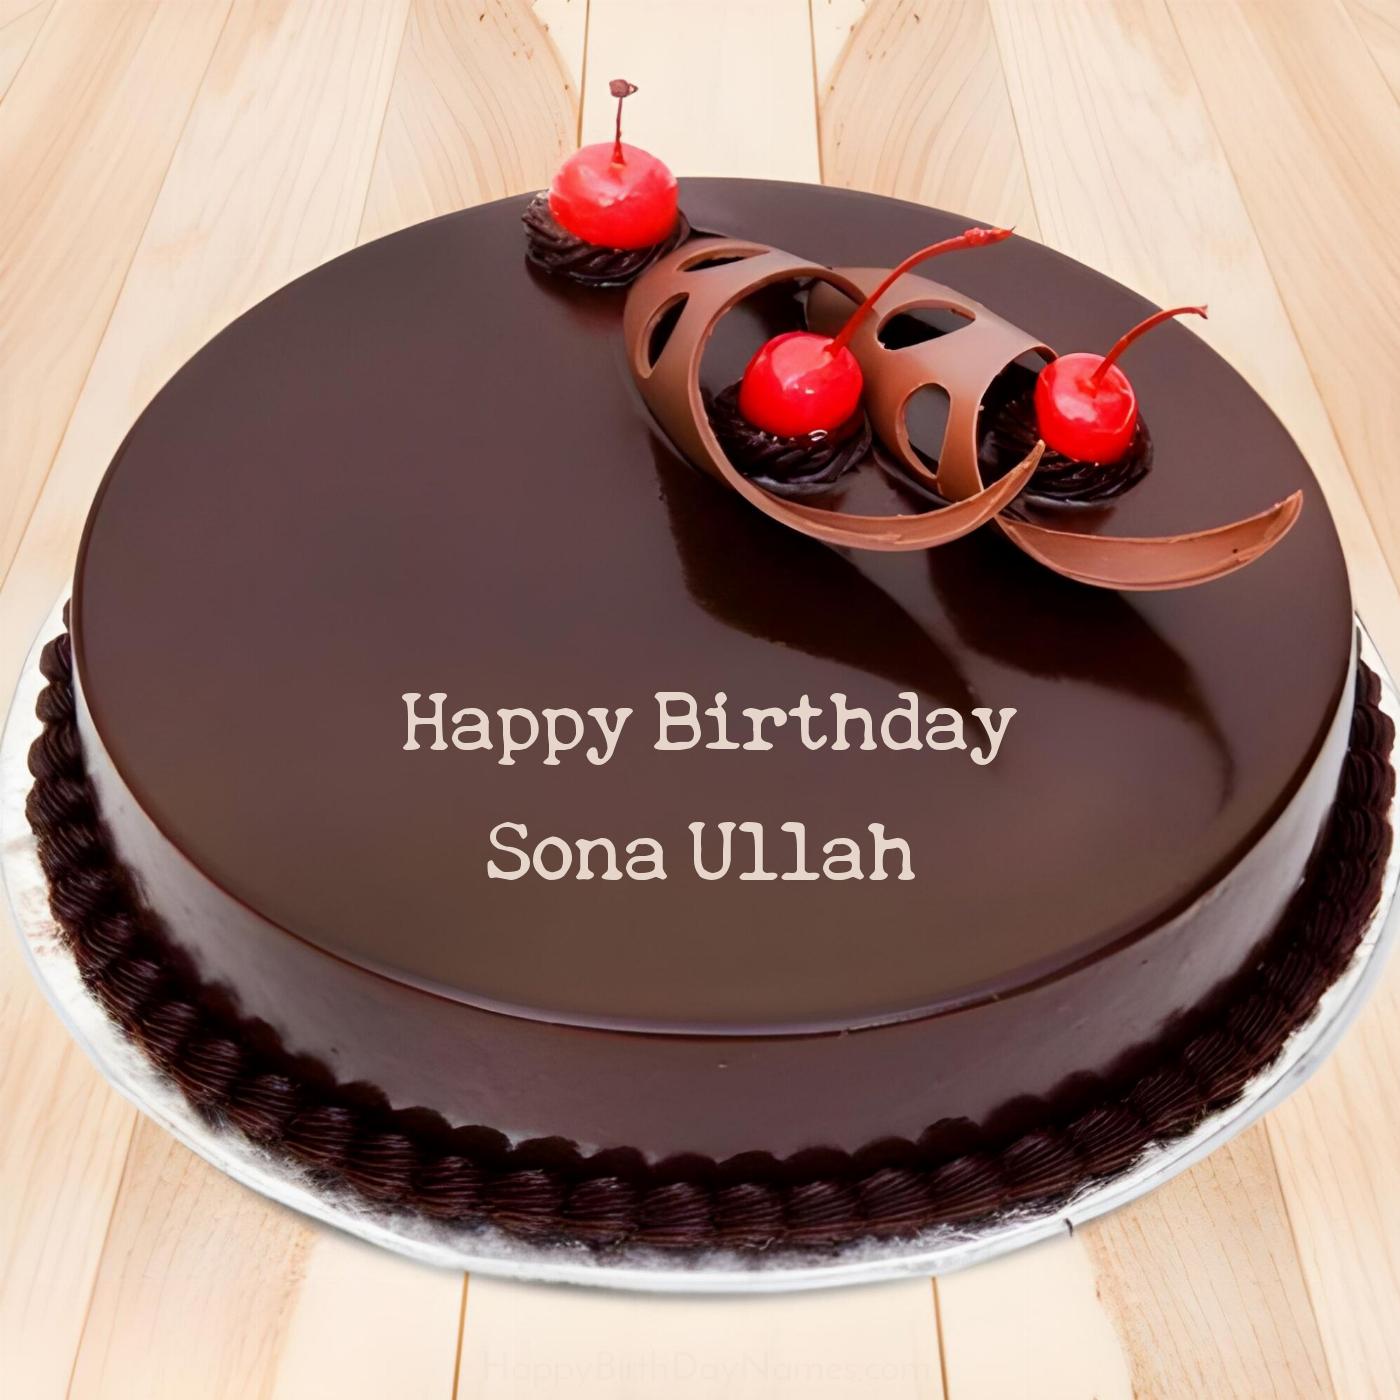 Happy Birthday Sona Ullah Chocolate Cherry Cake